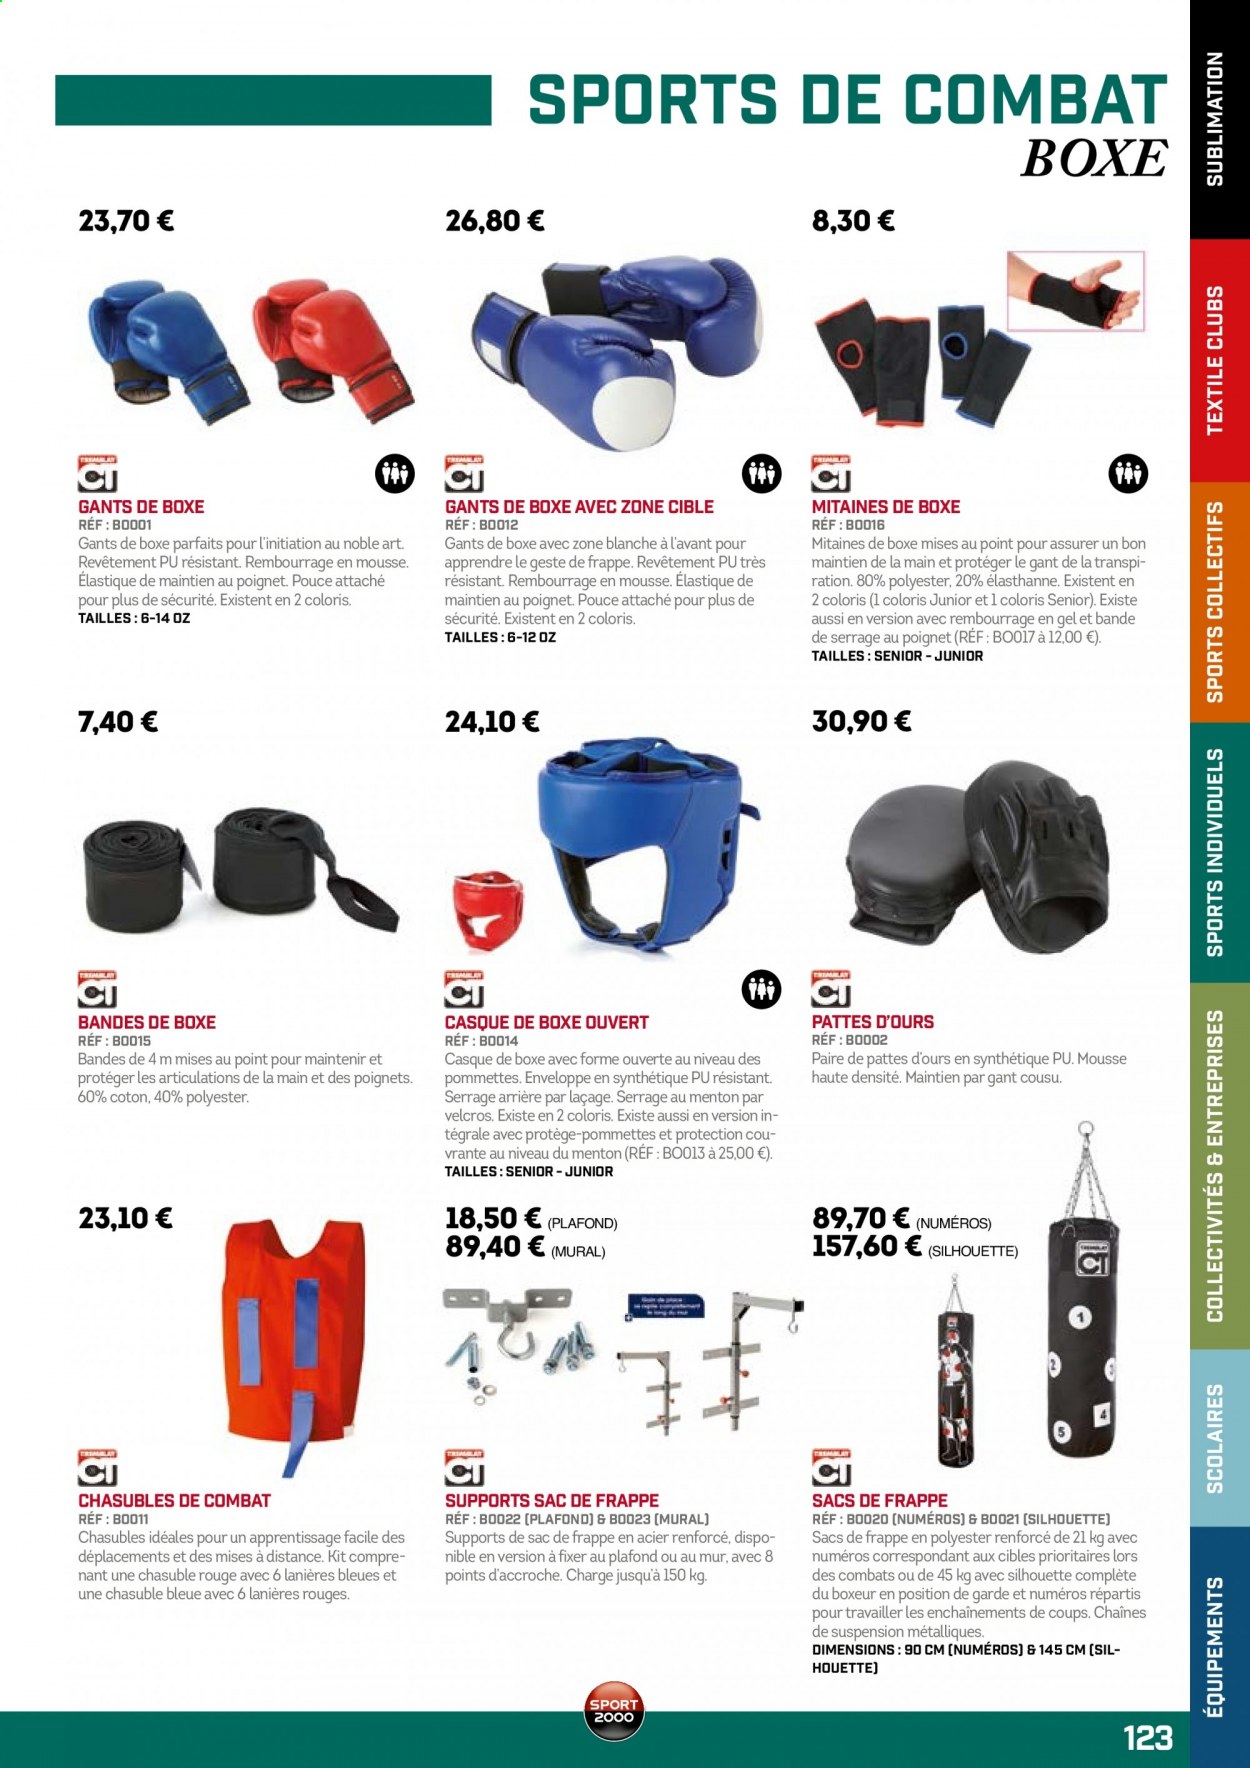 thumbnail - Catalogue Sport 2000 - Produits soldés - casque, gants de boxe. Page 123.